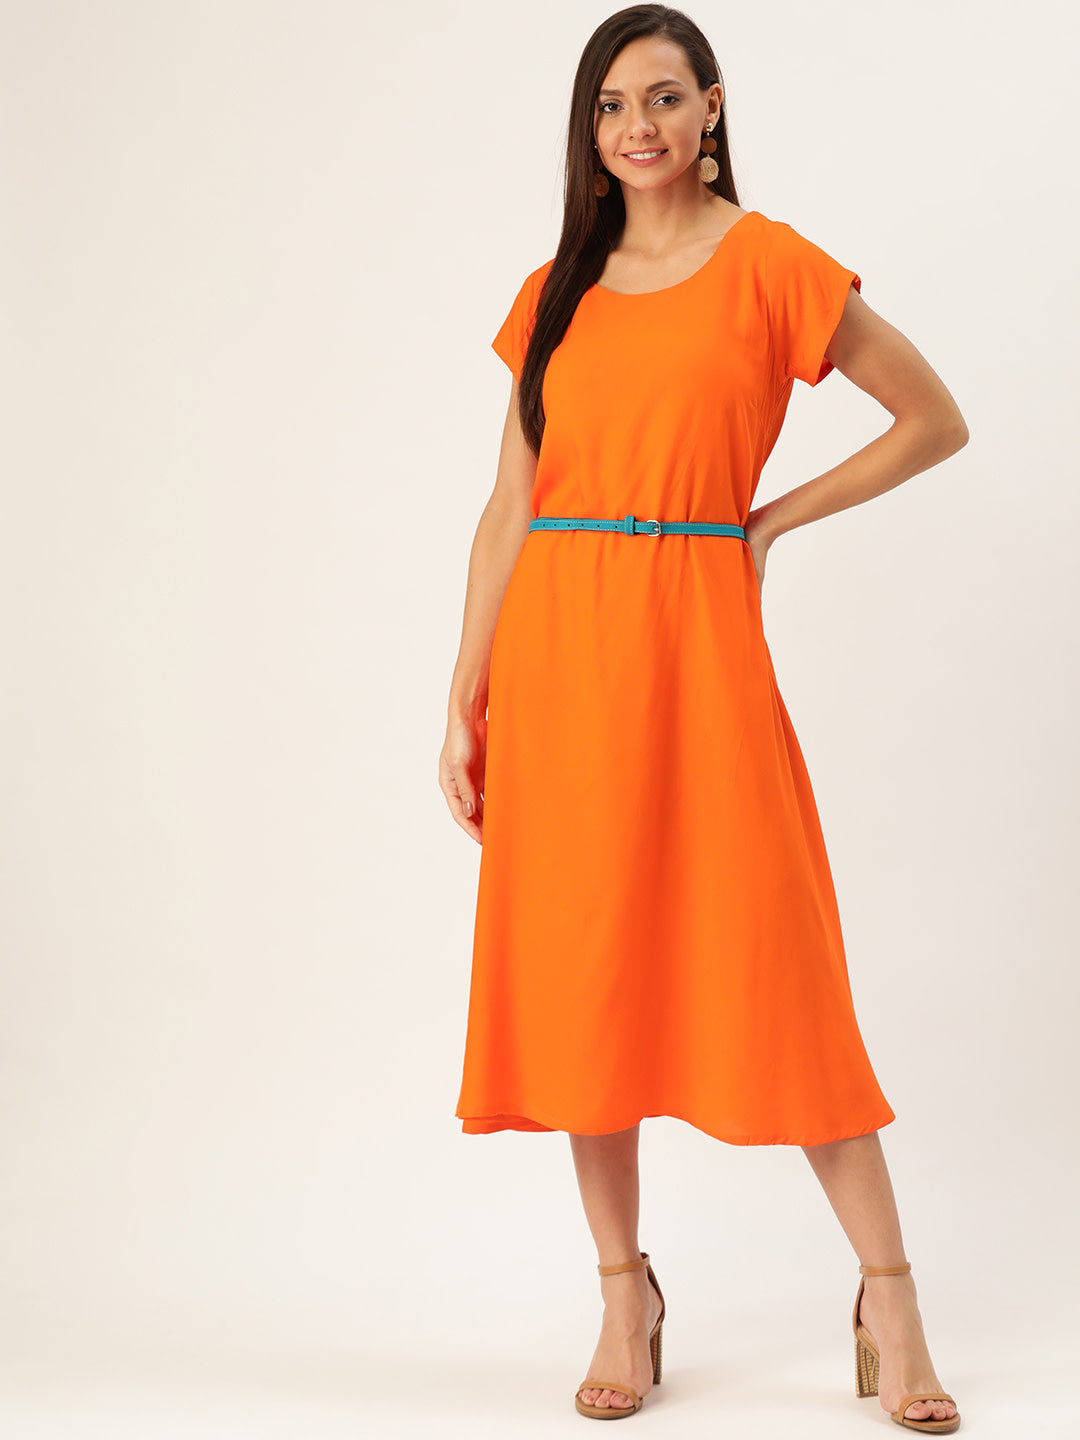 Orange Dress Aqua Belt